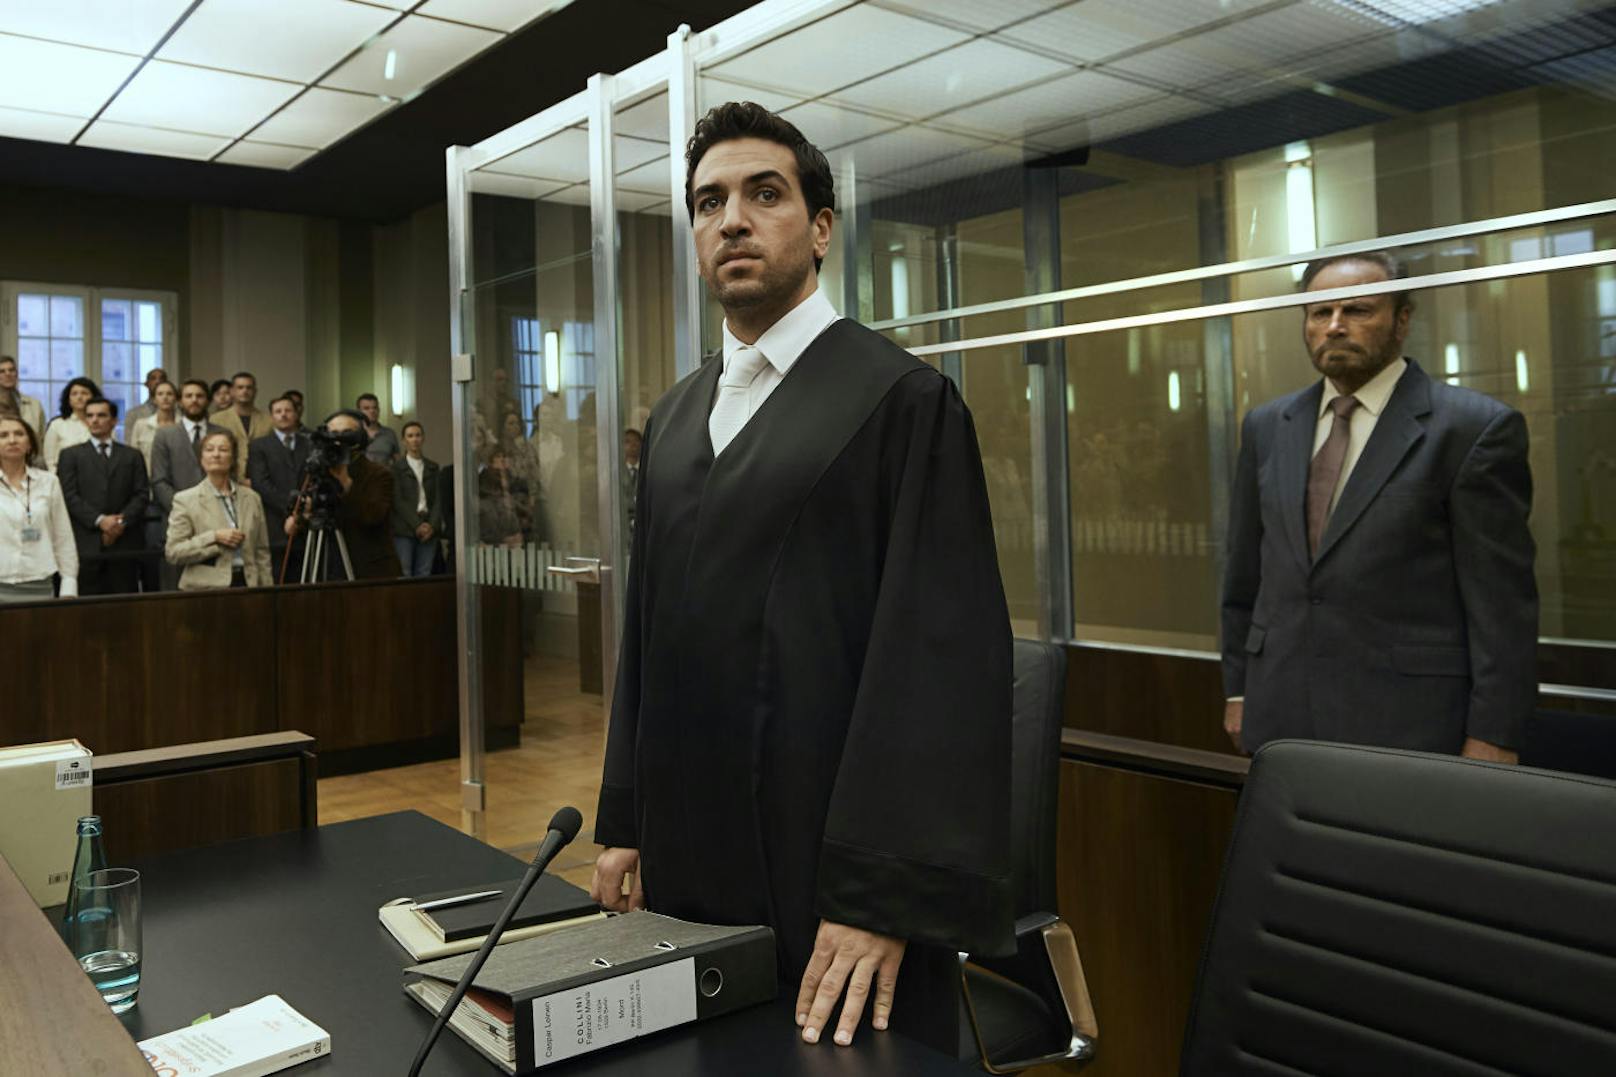 Anwalt Caspar Leinen (Elyas M'Barek) und sein Mandant Fabrizio Collini (Franco Nero) im Gerichtssaal.